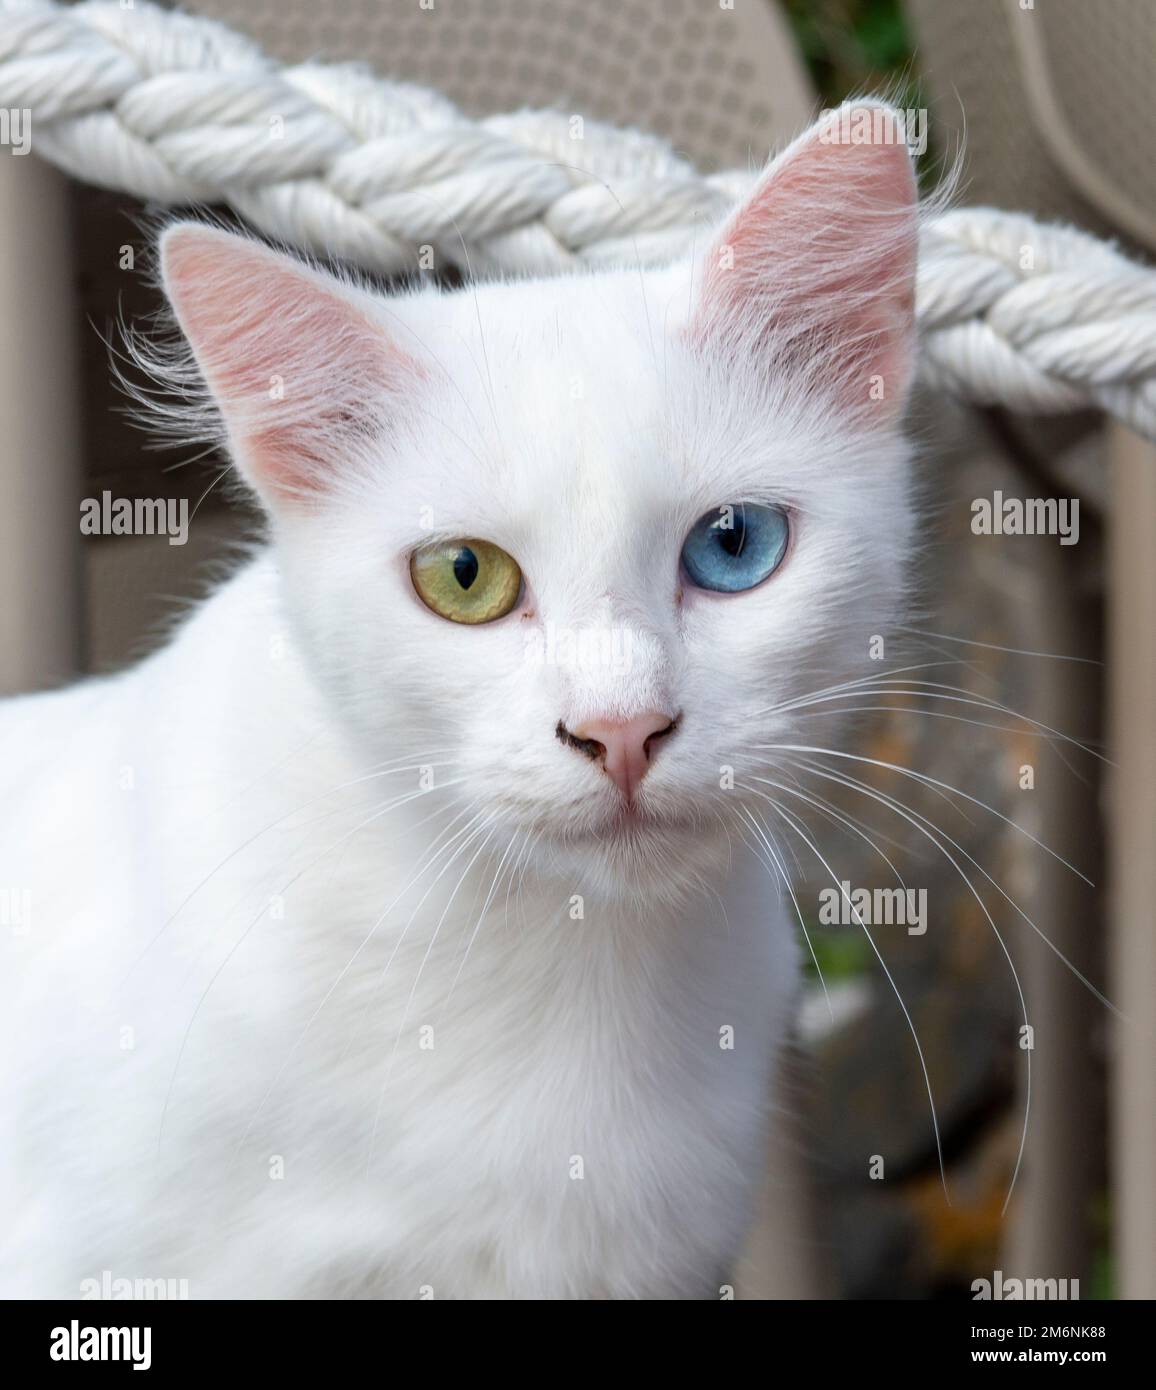 Chat blanc pur avec des yeux verts et bleus. Yeux de deux couleurs différentes. Hétérochromie. Banque D'Images